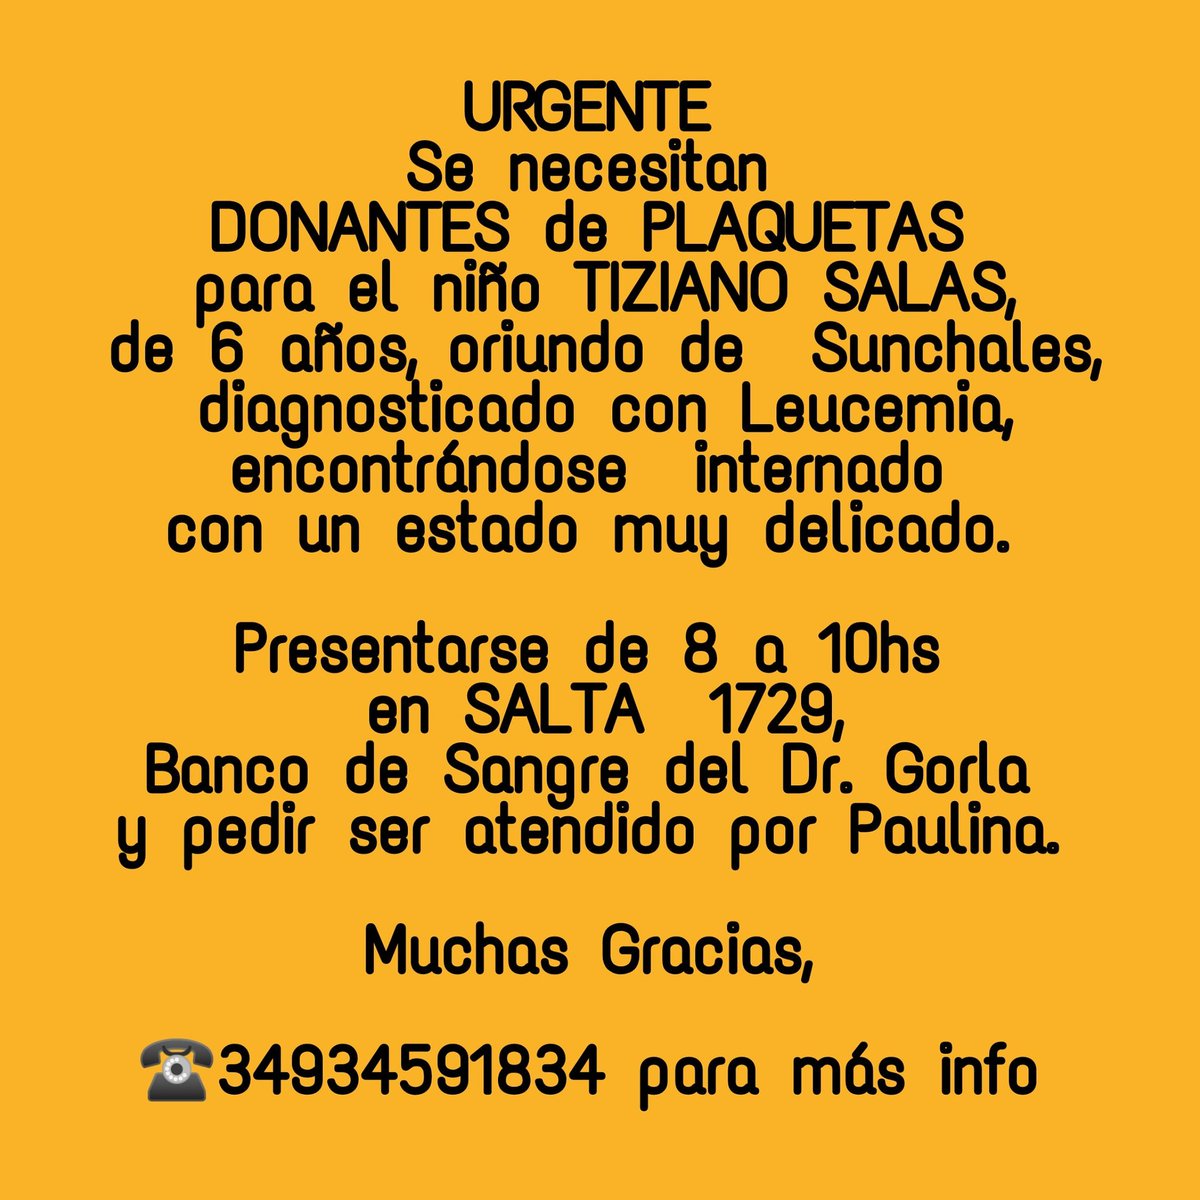 📣URGENTE
#donantesdeplaquetas
para Tiziano, un niño de 6 años diagnosticado con leucemia.

#donasangre
#donaplaquetas
#comunidaddonante